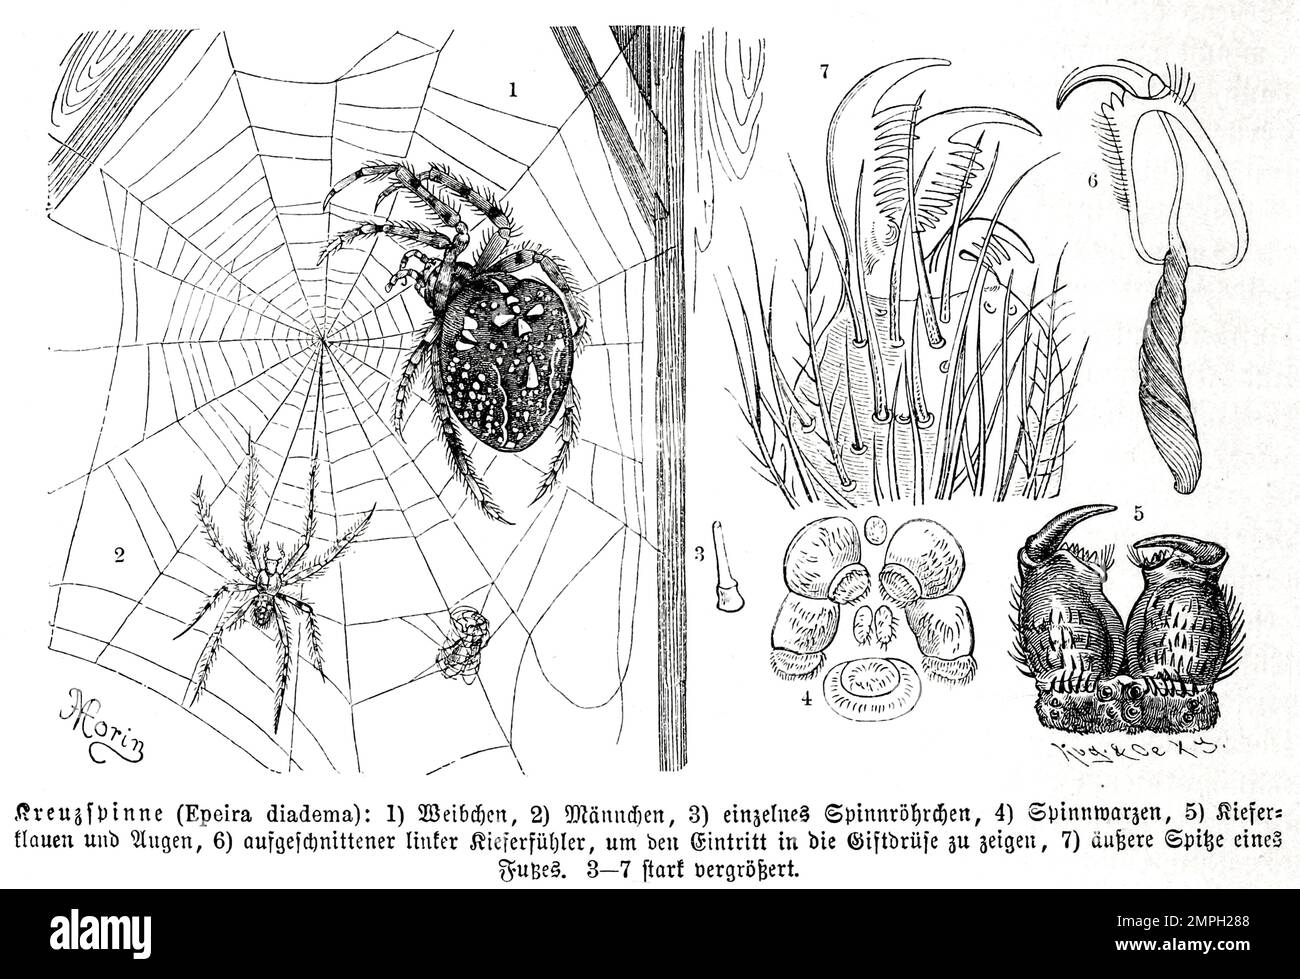 Insekten, Gartenkreuzspinne, Araneus diadematus ist die in Mitteleuropa häufigste Vertreterin der Gattung der Kreuzspinnen, Historisch, digital restaurierte Reproduktion von einer Vorlage aus dem 19. Jahrhundert Stock Photo